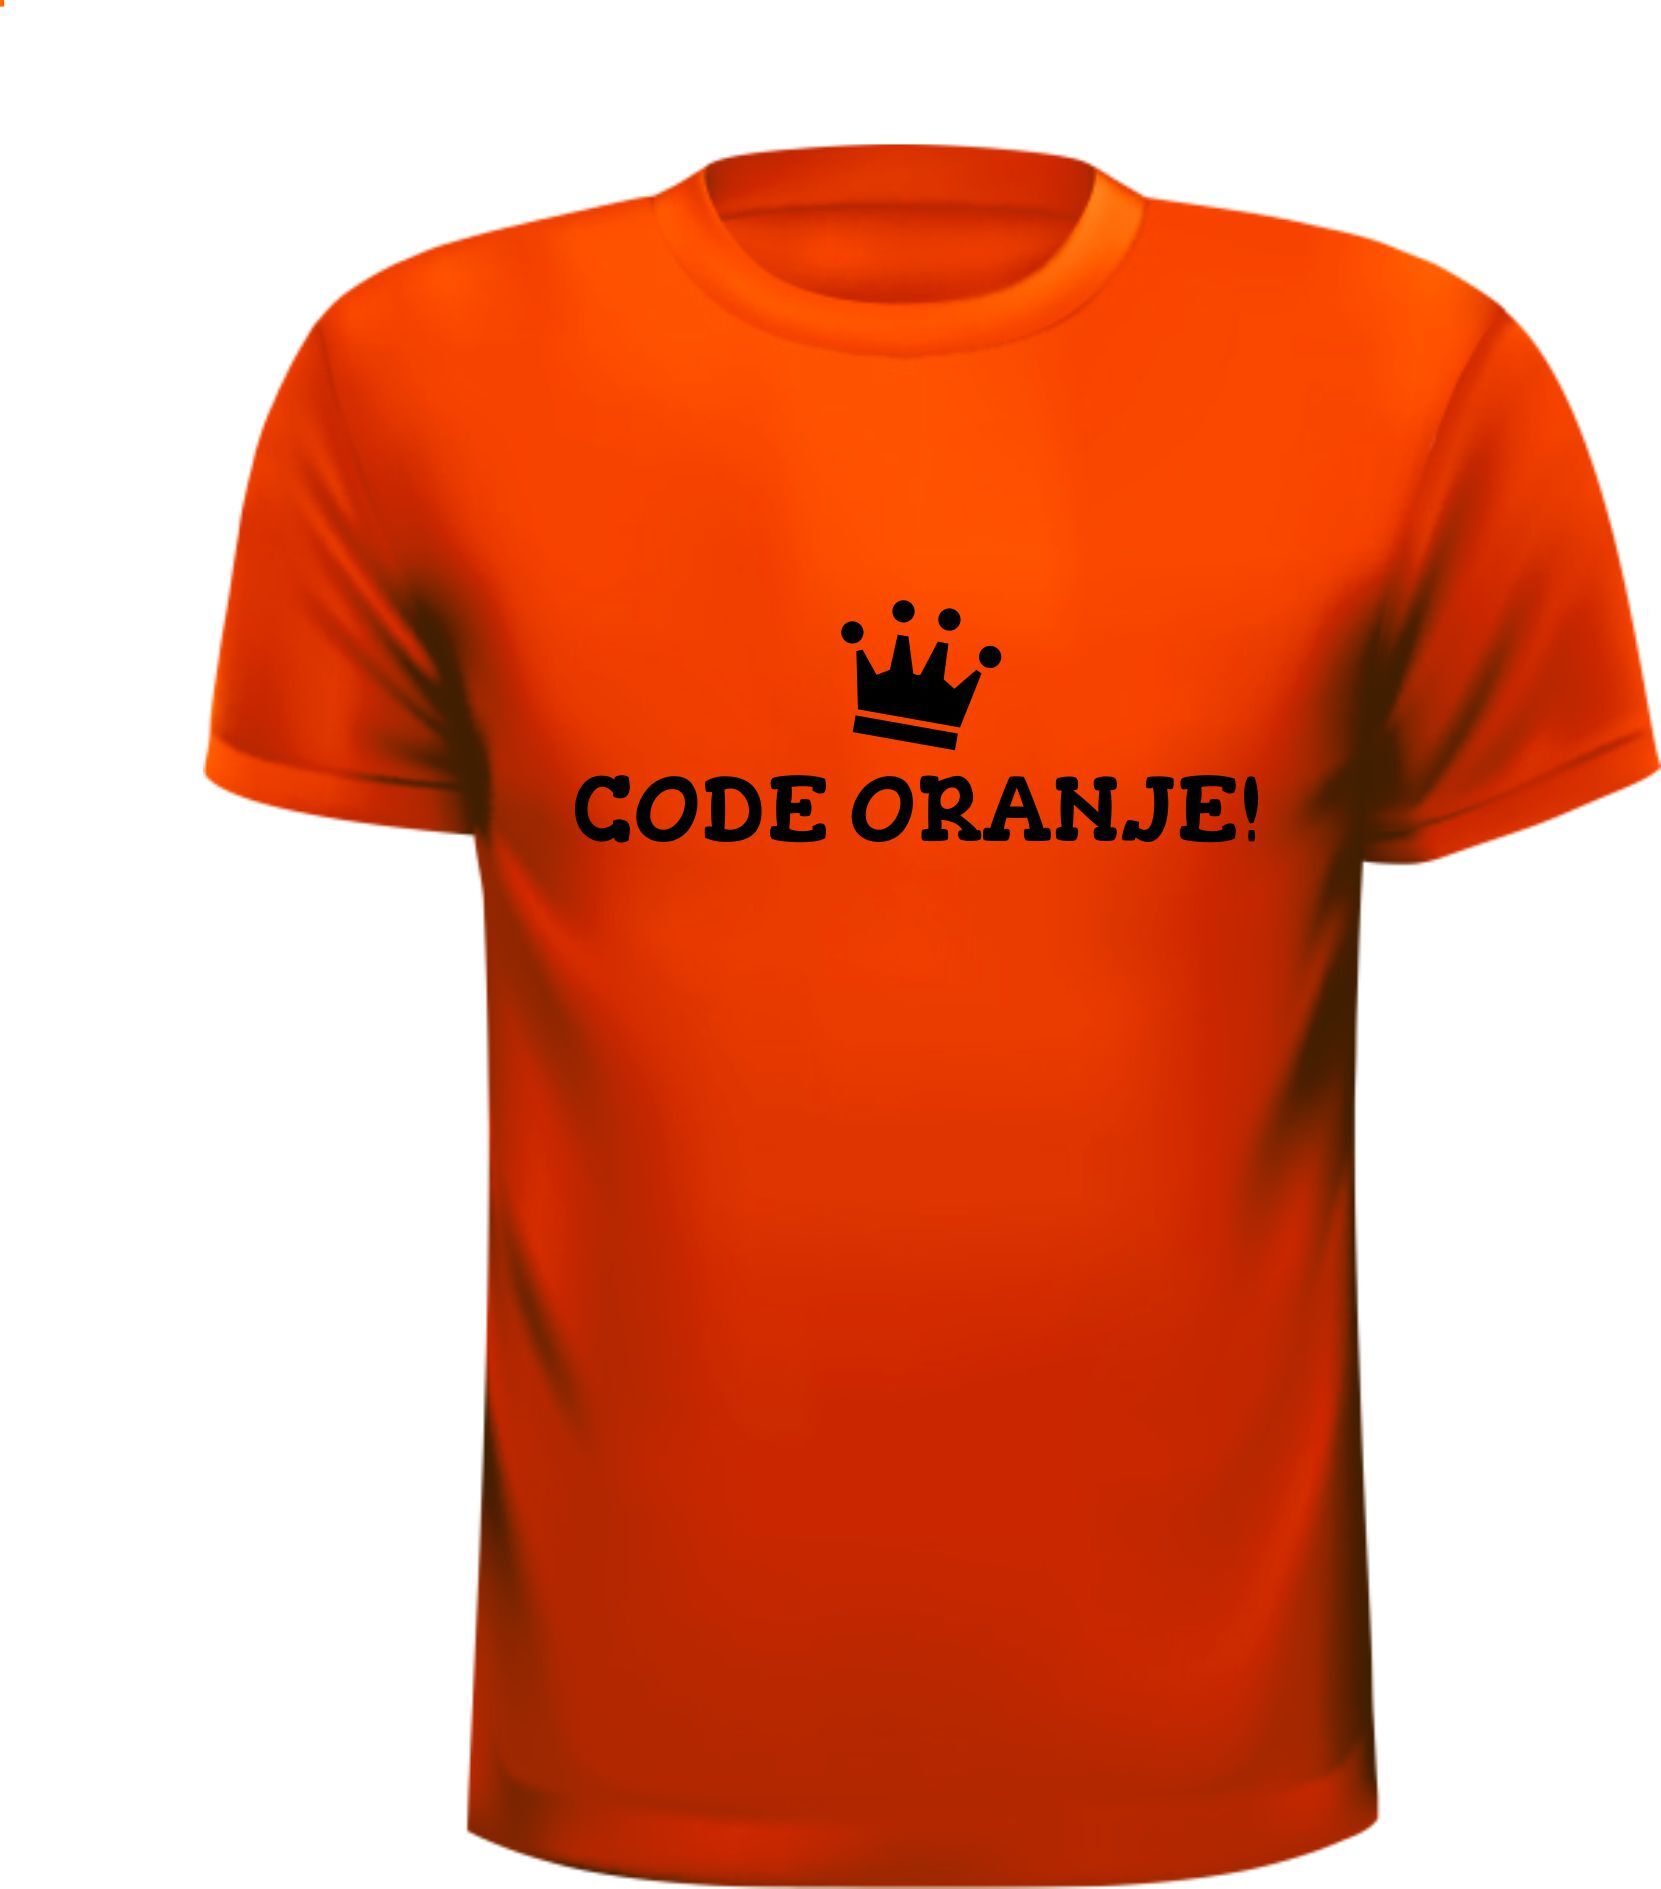 Oranje shirtje voor koningsdag grappig code oranje!